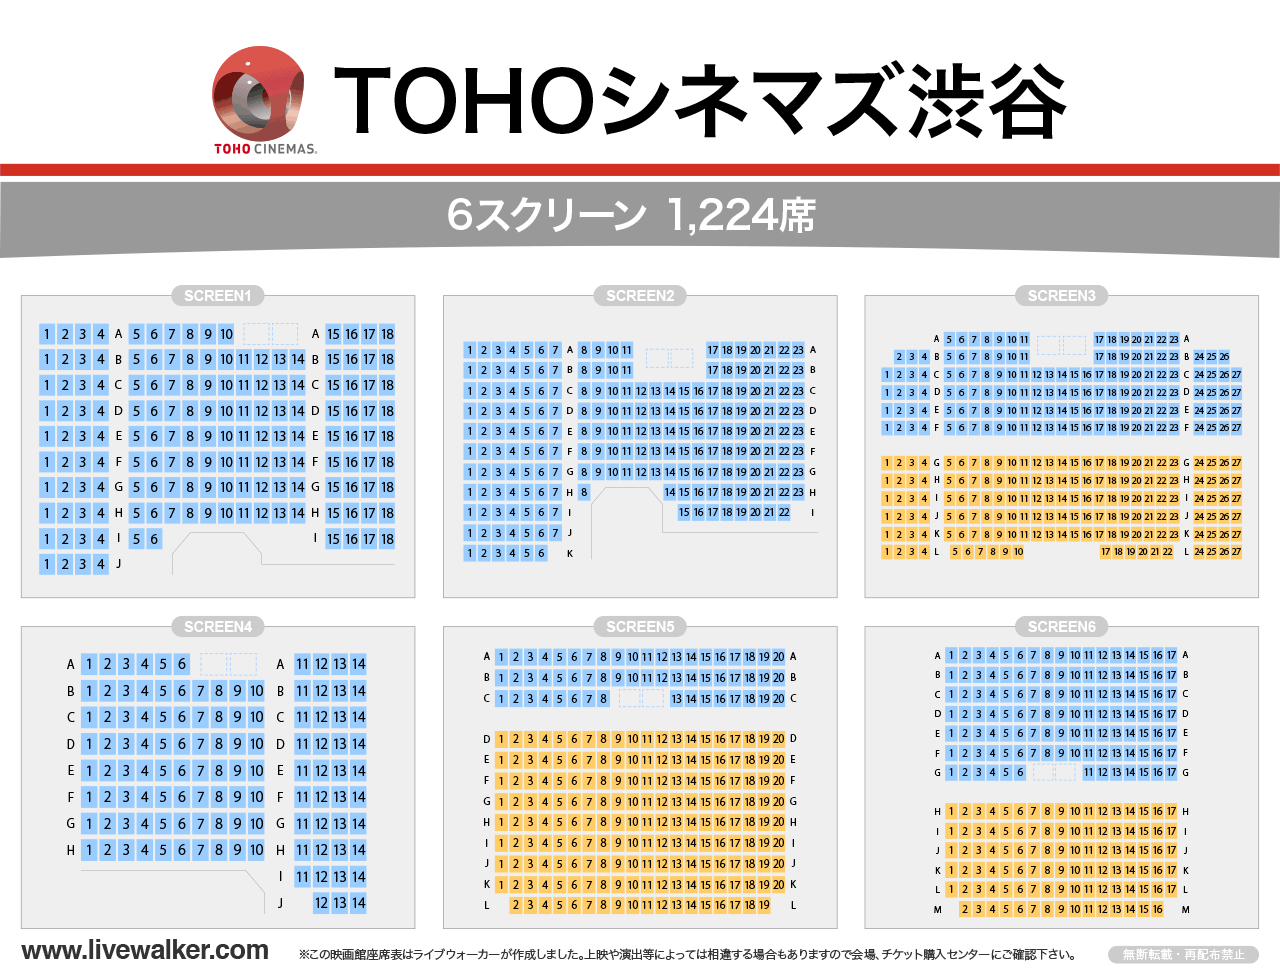 渋谷 東宝 シネマ 【座席表あり】TOHOシネマズ渋谷のスクリーン3でみやすい席はどれ？